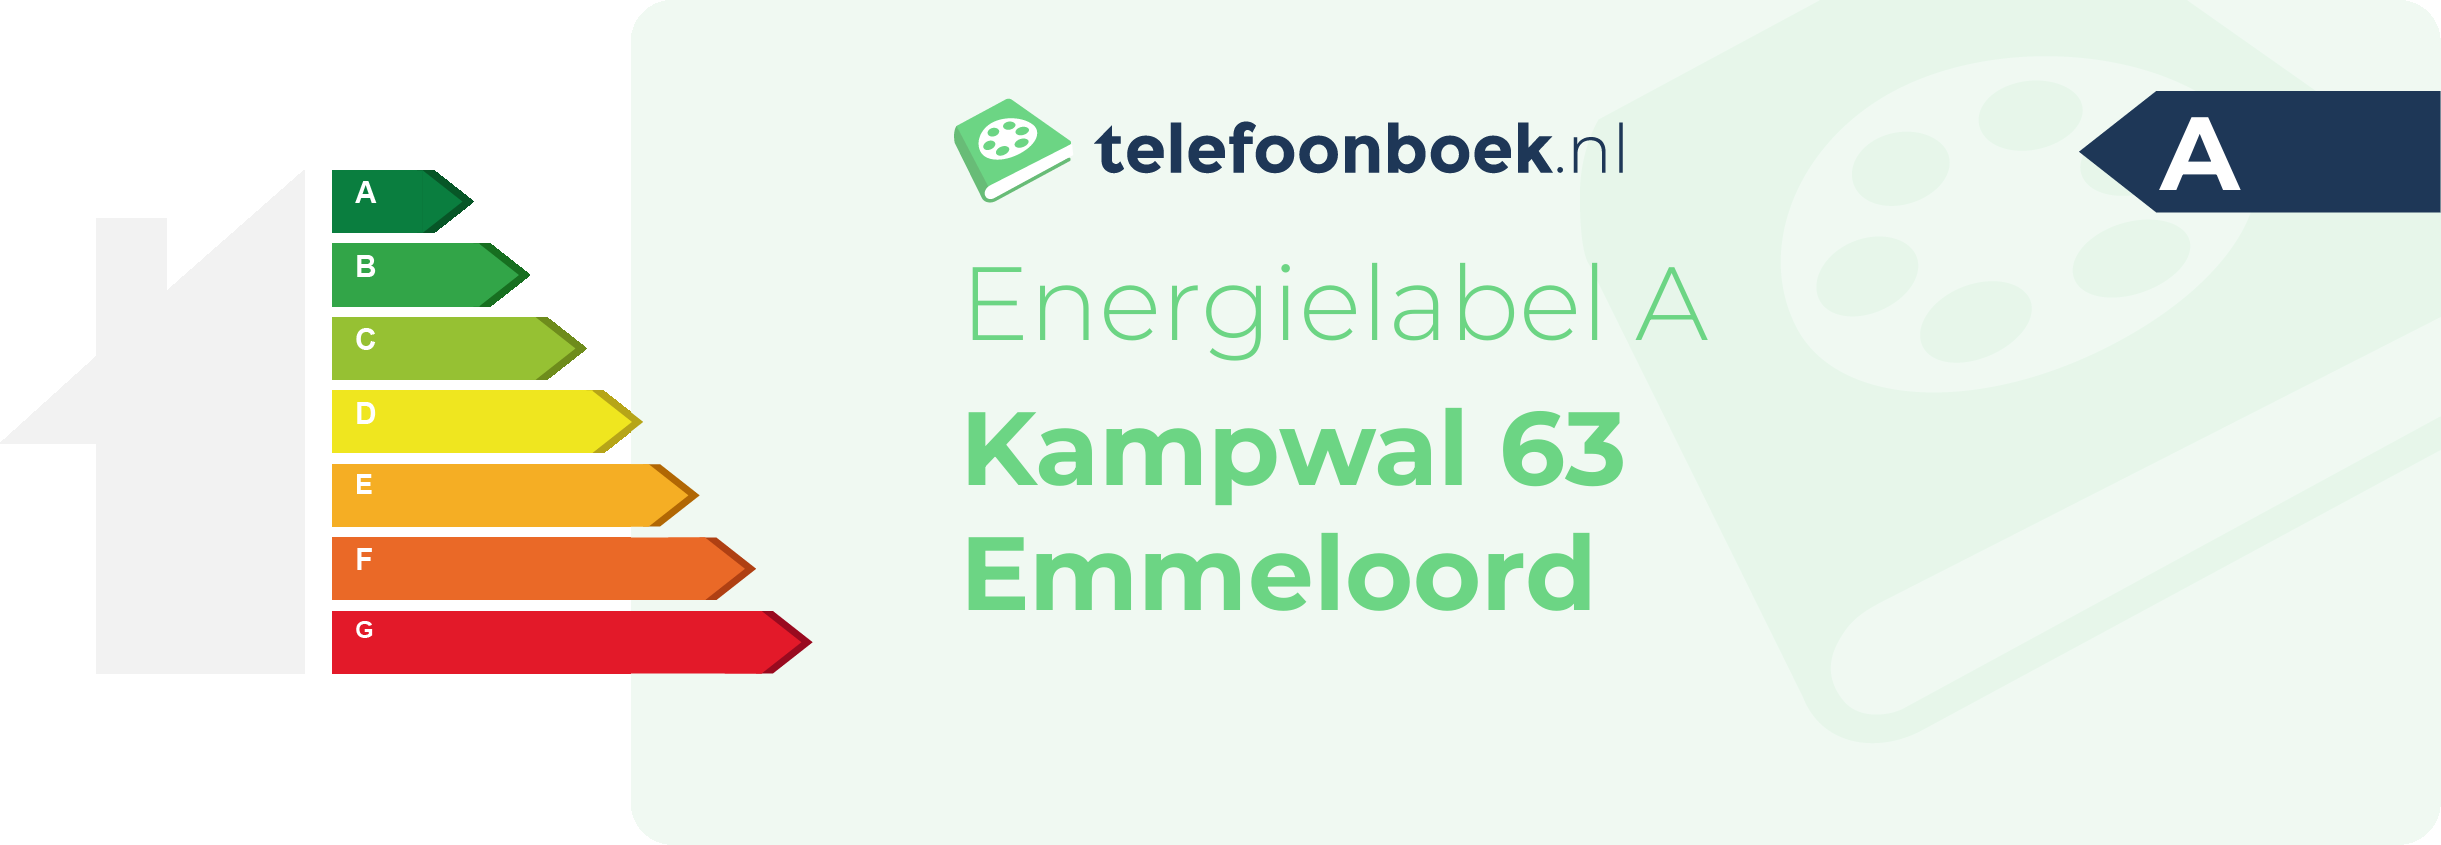 Energielabel Kampwal 63 Emmeloord